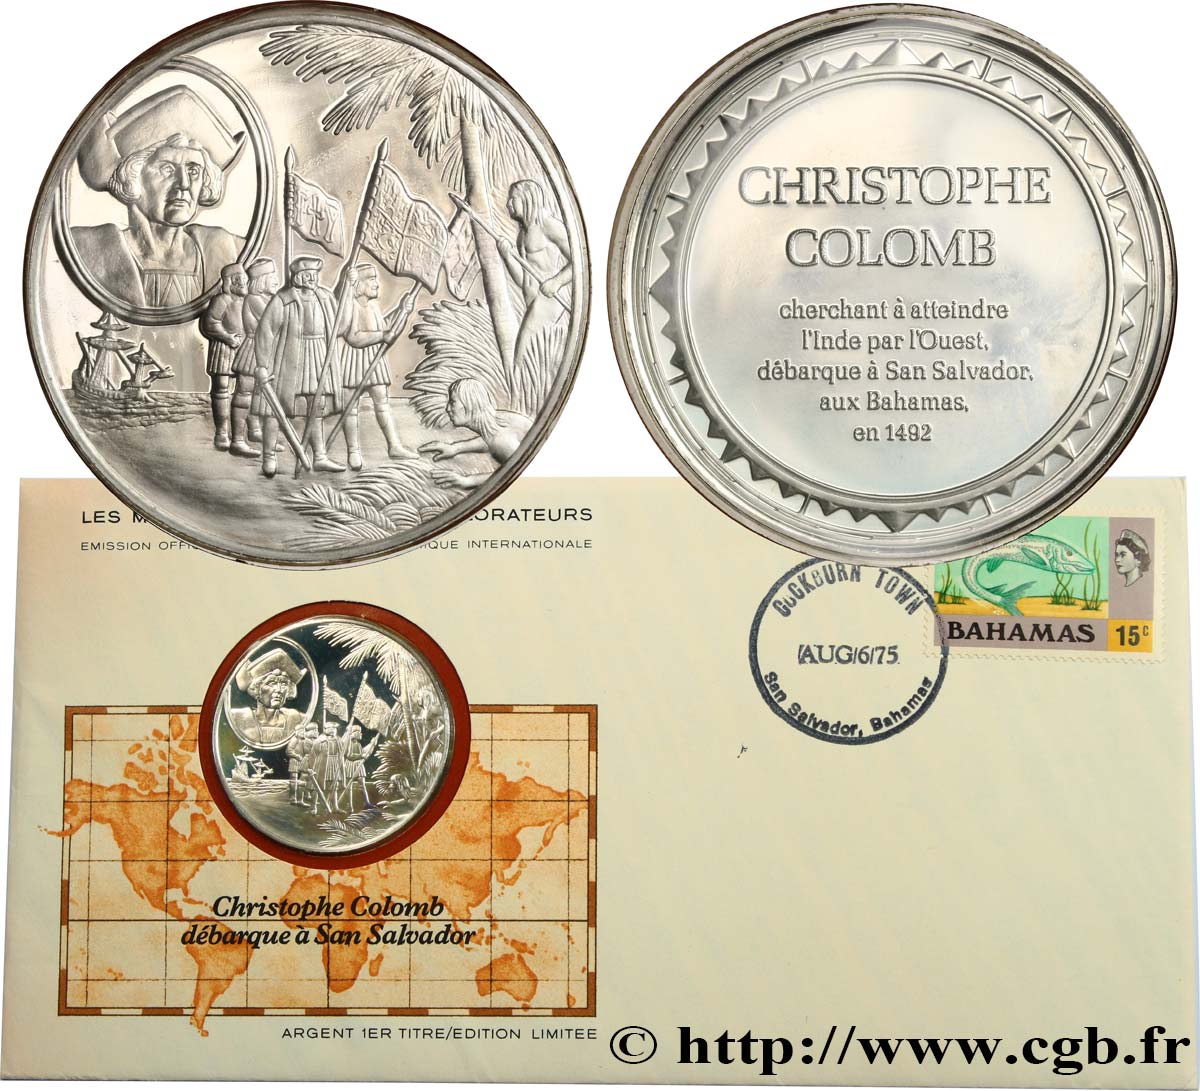 THE GREAT EXPLORERS  MEDALS Enveloppe “Timbre médaille”, Christophe Colomb débarque à San Salvador SC